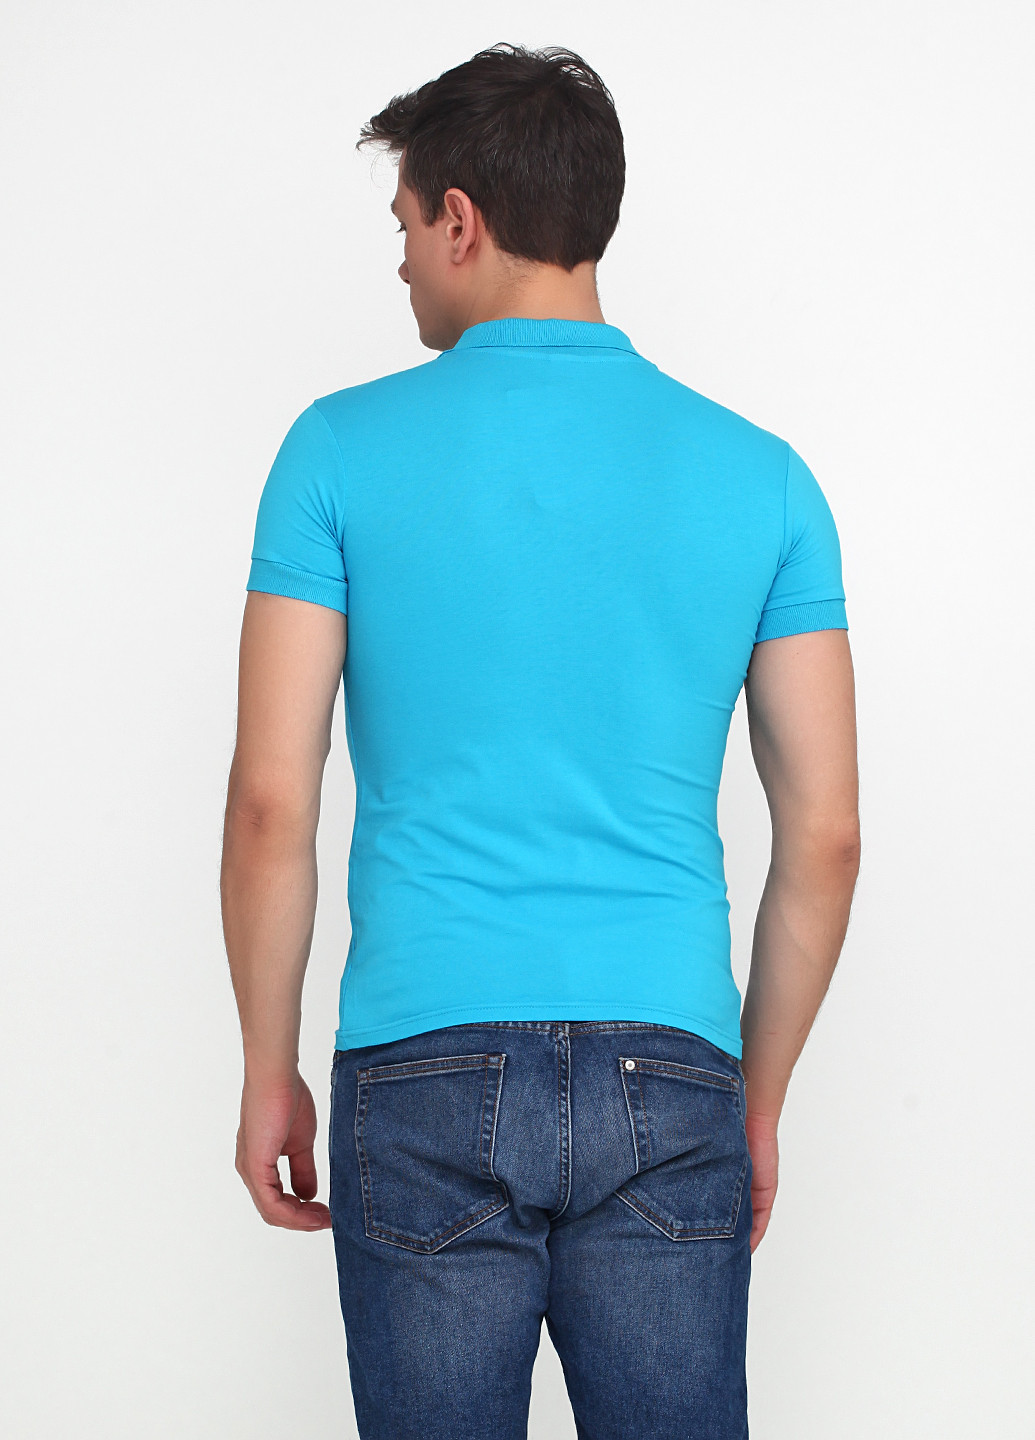 Голубой футболка-поло для мужчин EL & KEN однотонная